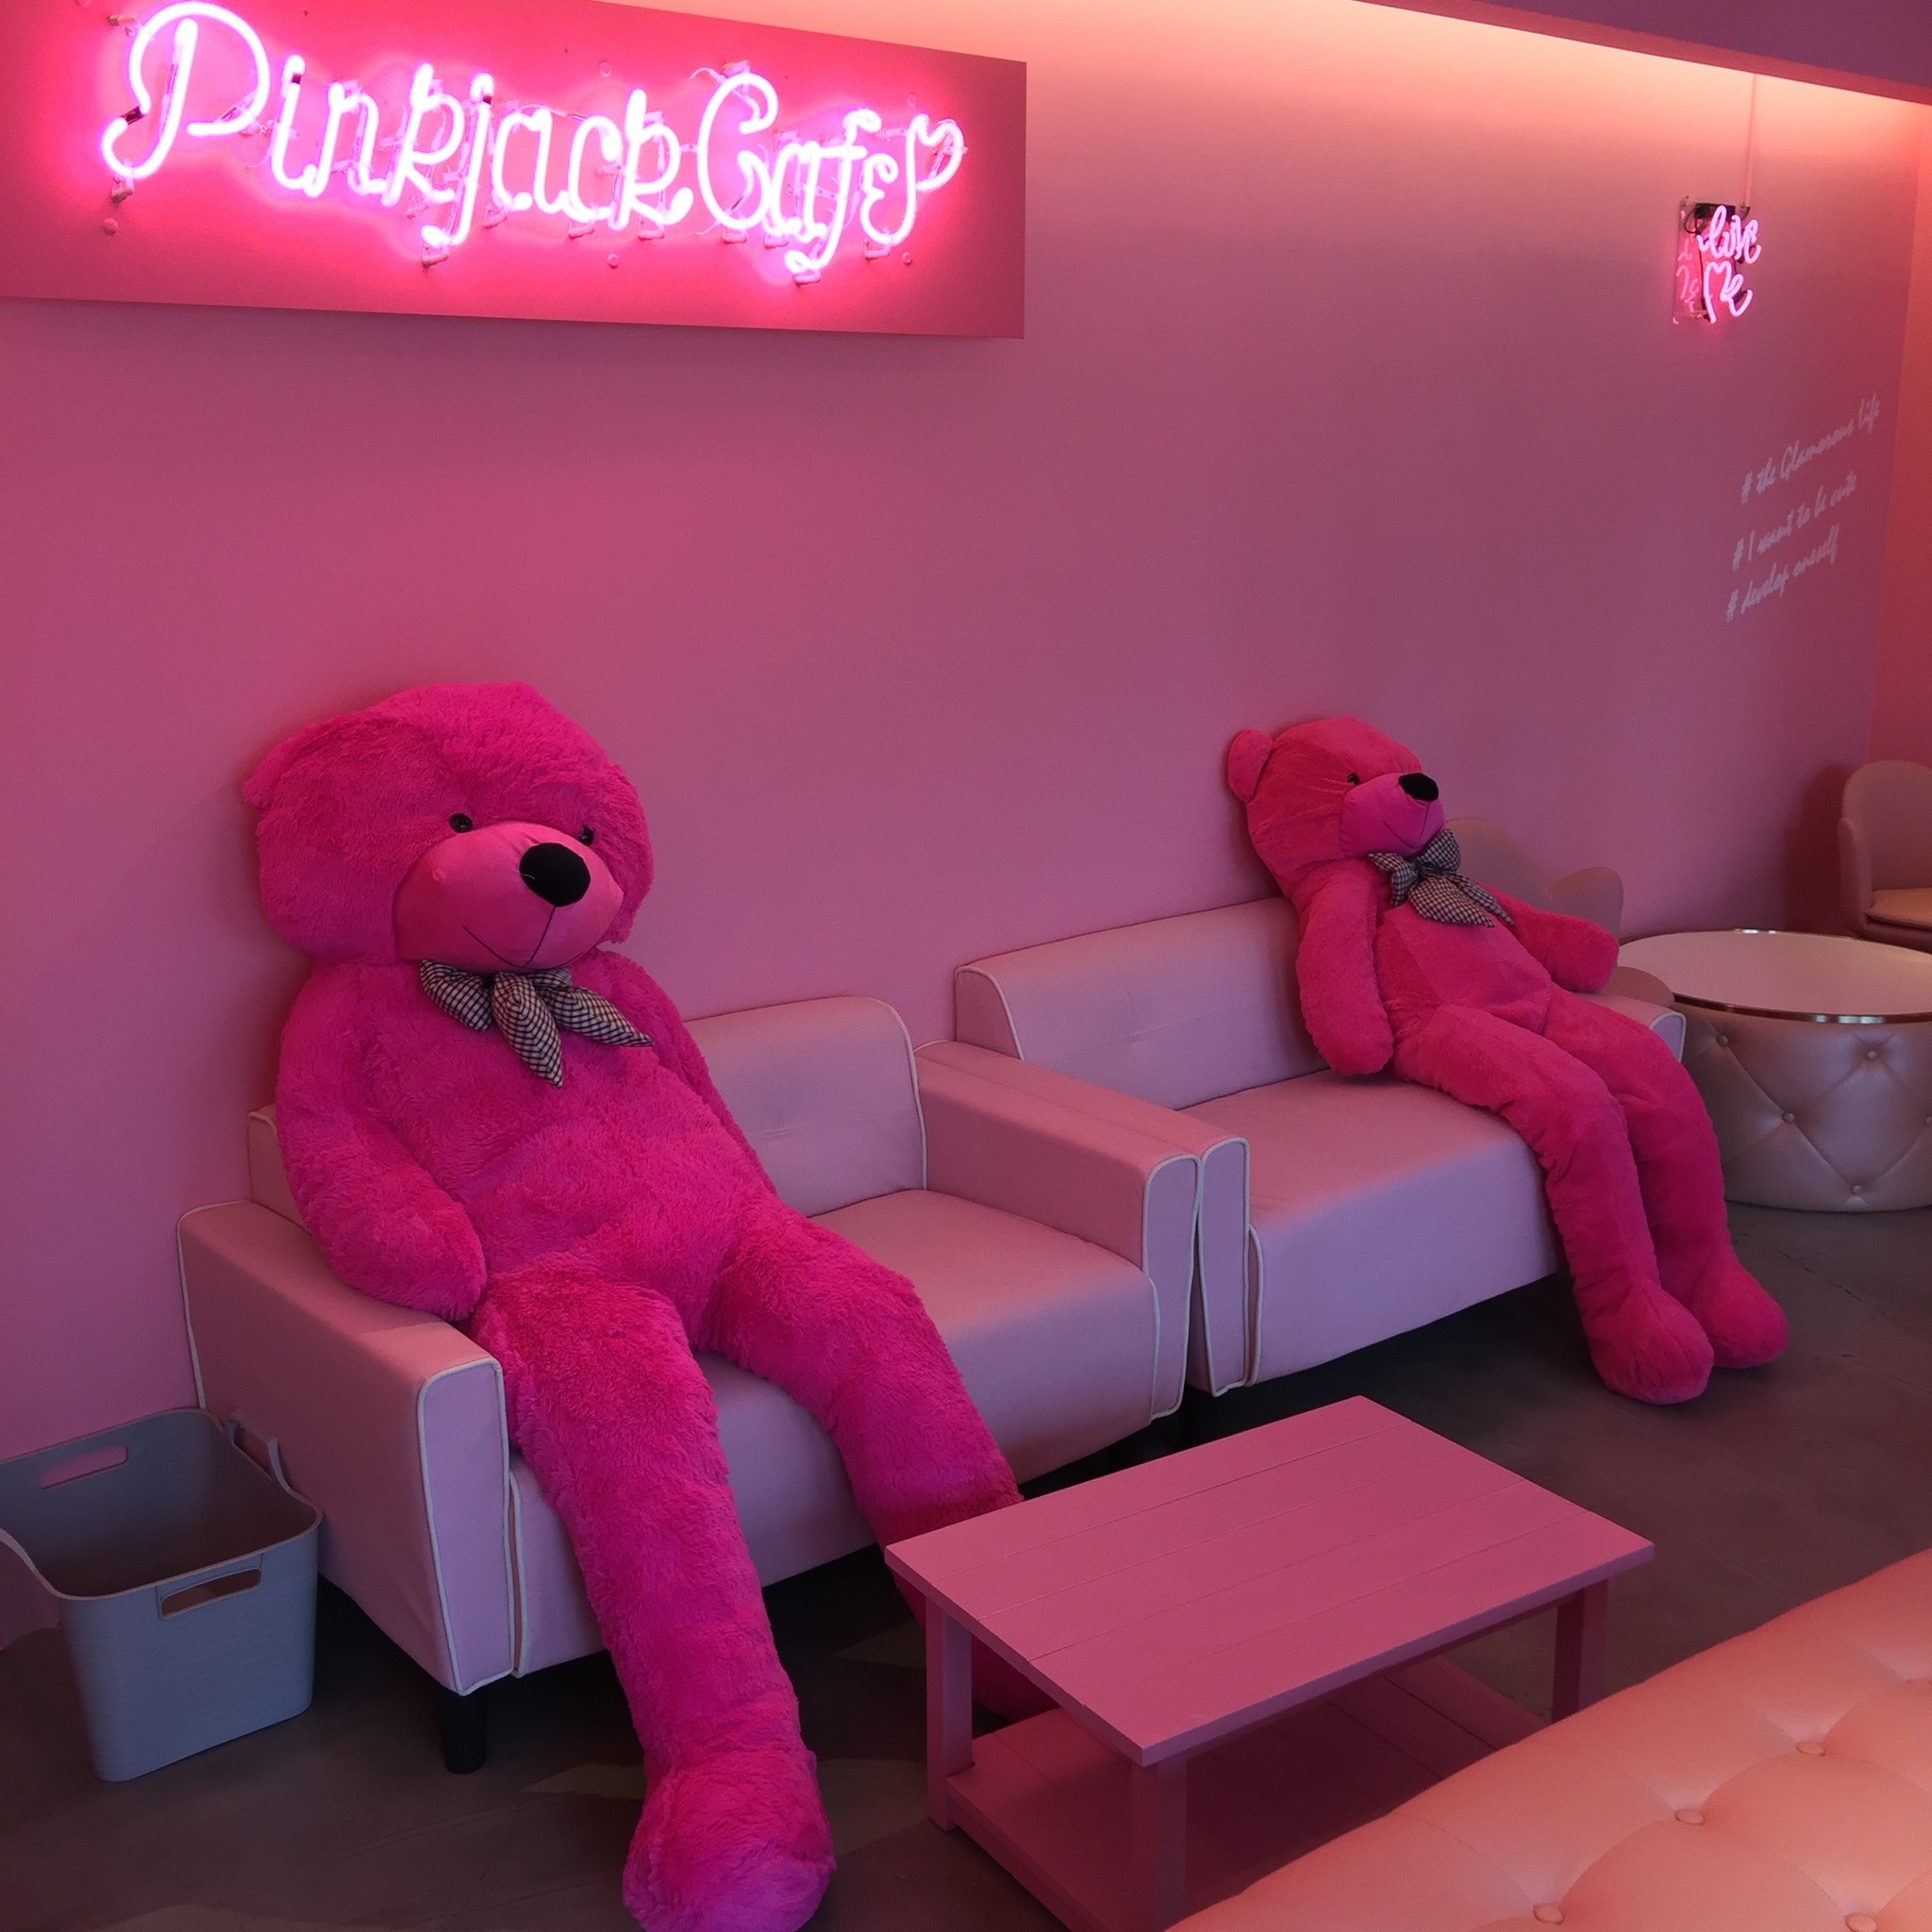 静岡の Pinkjackcafe ピンクジャックカフェ が夏に向けてメニューをリニューアル 新インスタ映えスポットがアジアに Kawaii を発信 Pinkjackcafeのプレスリリース